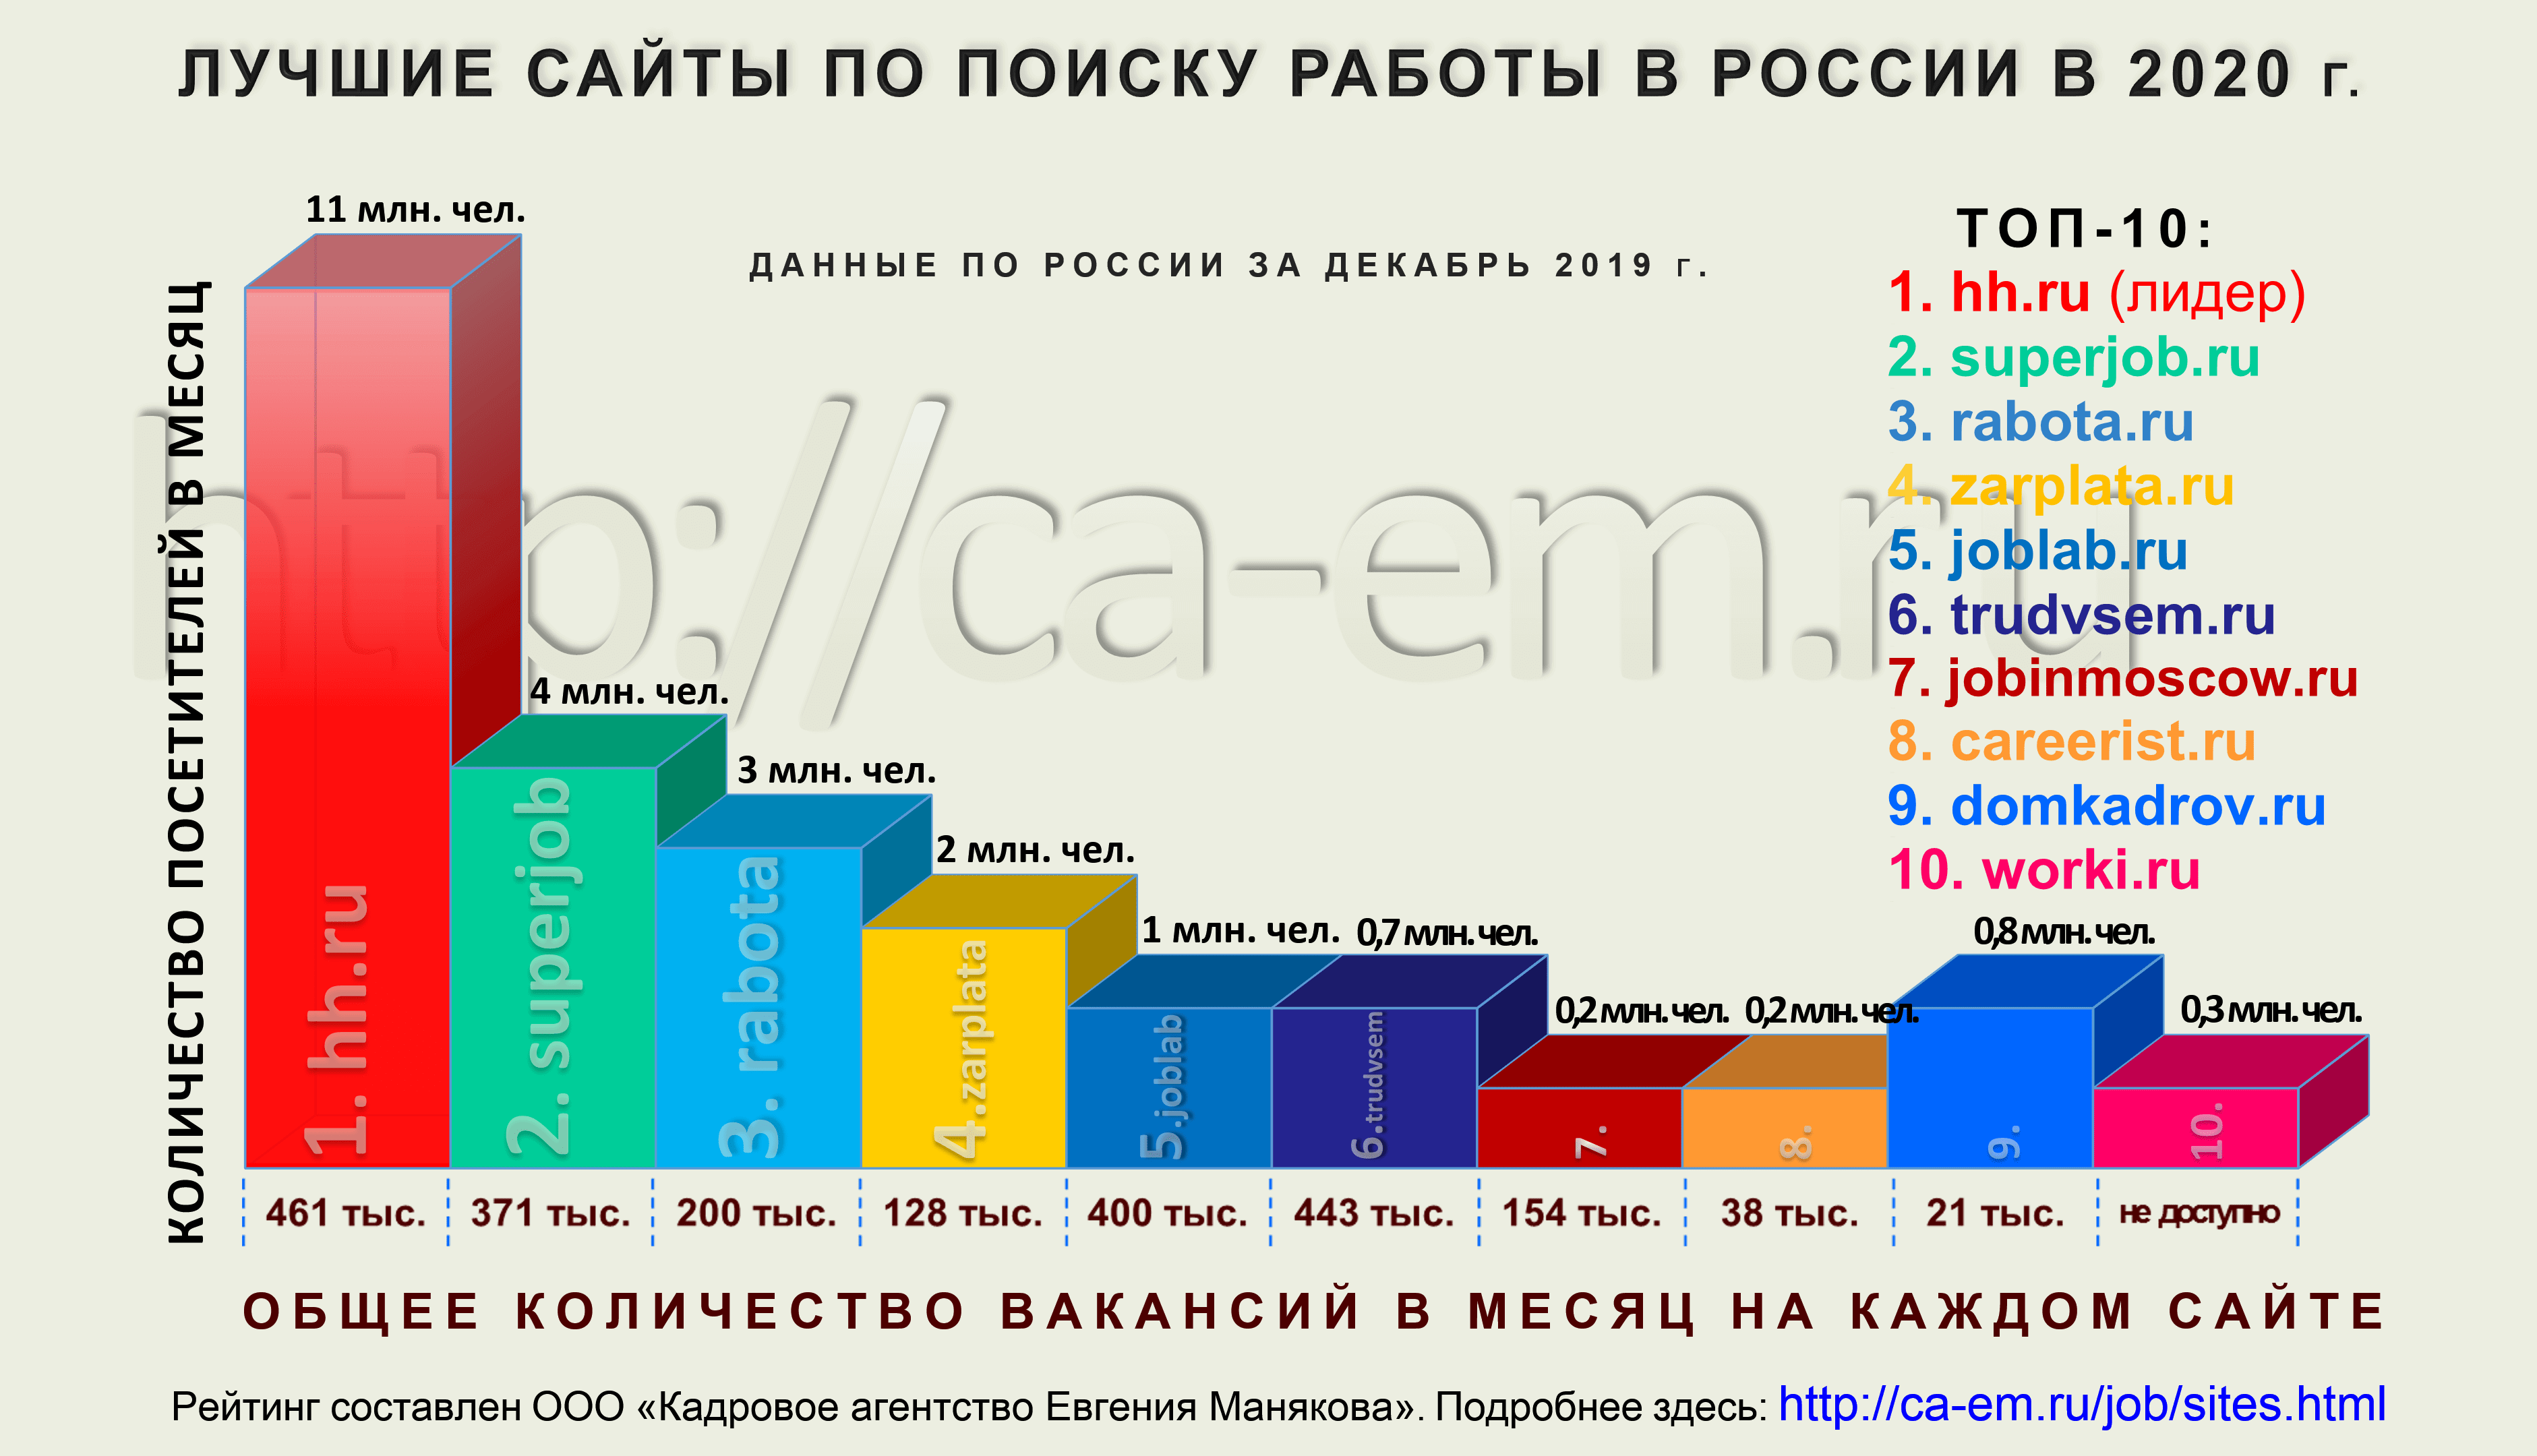 Место hh.ru в рейтинге сайтов поиска работы. 2020